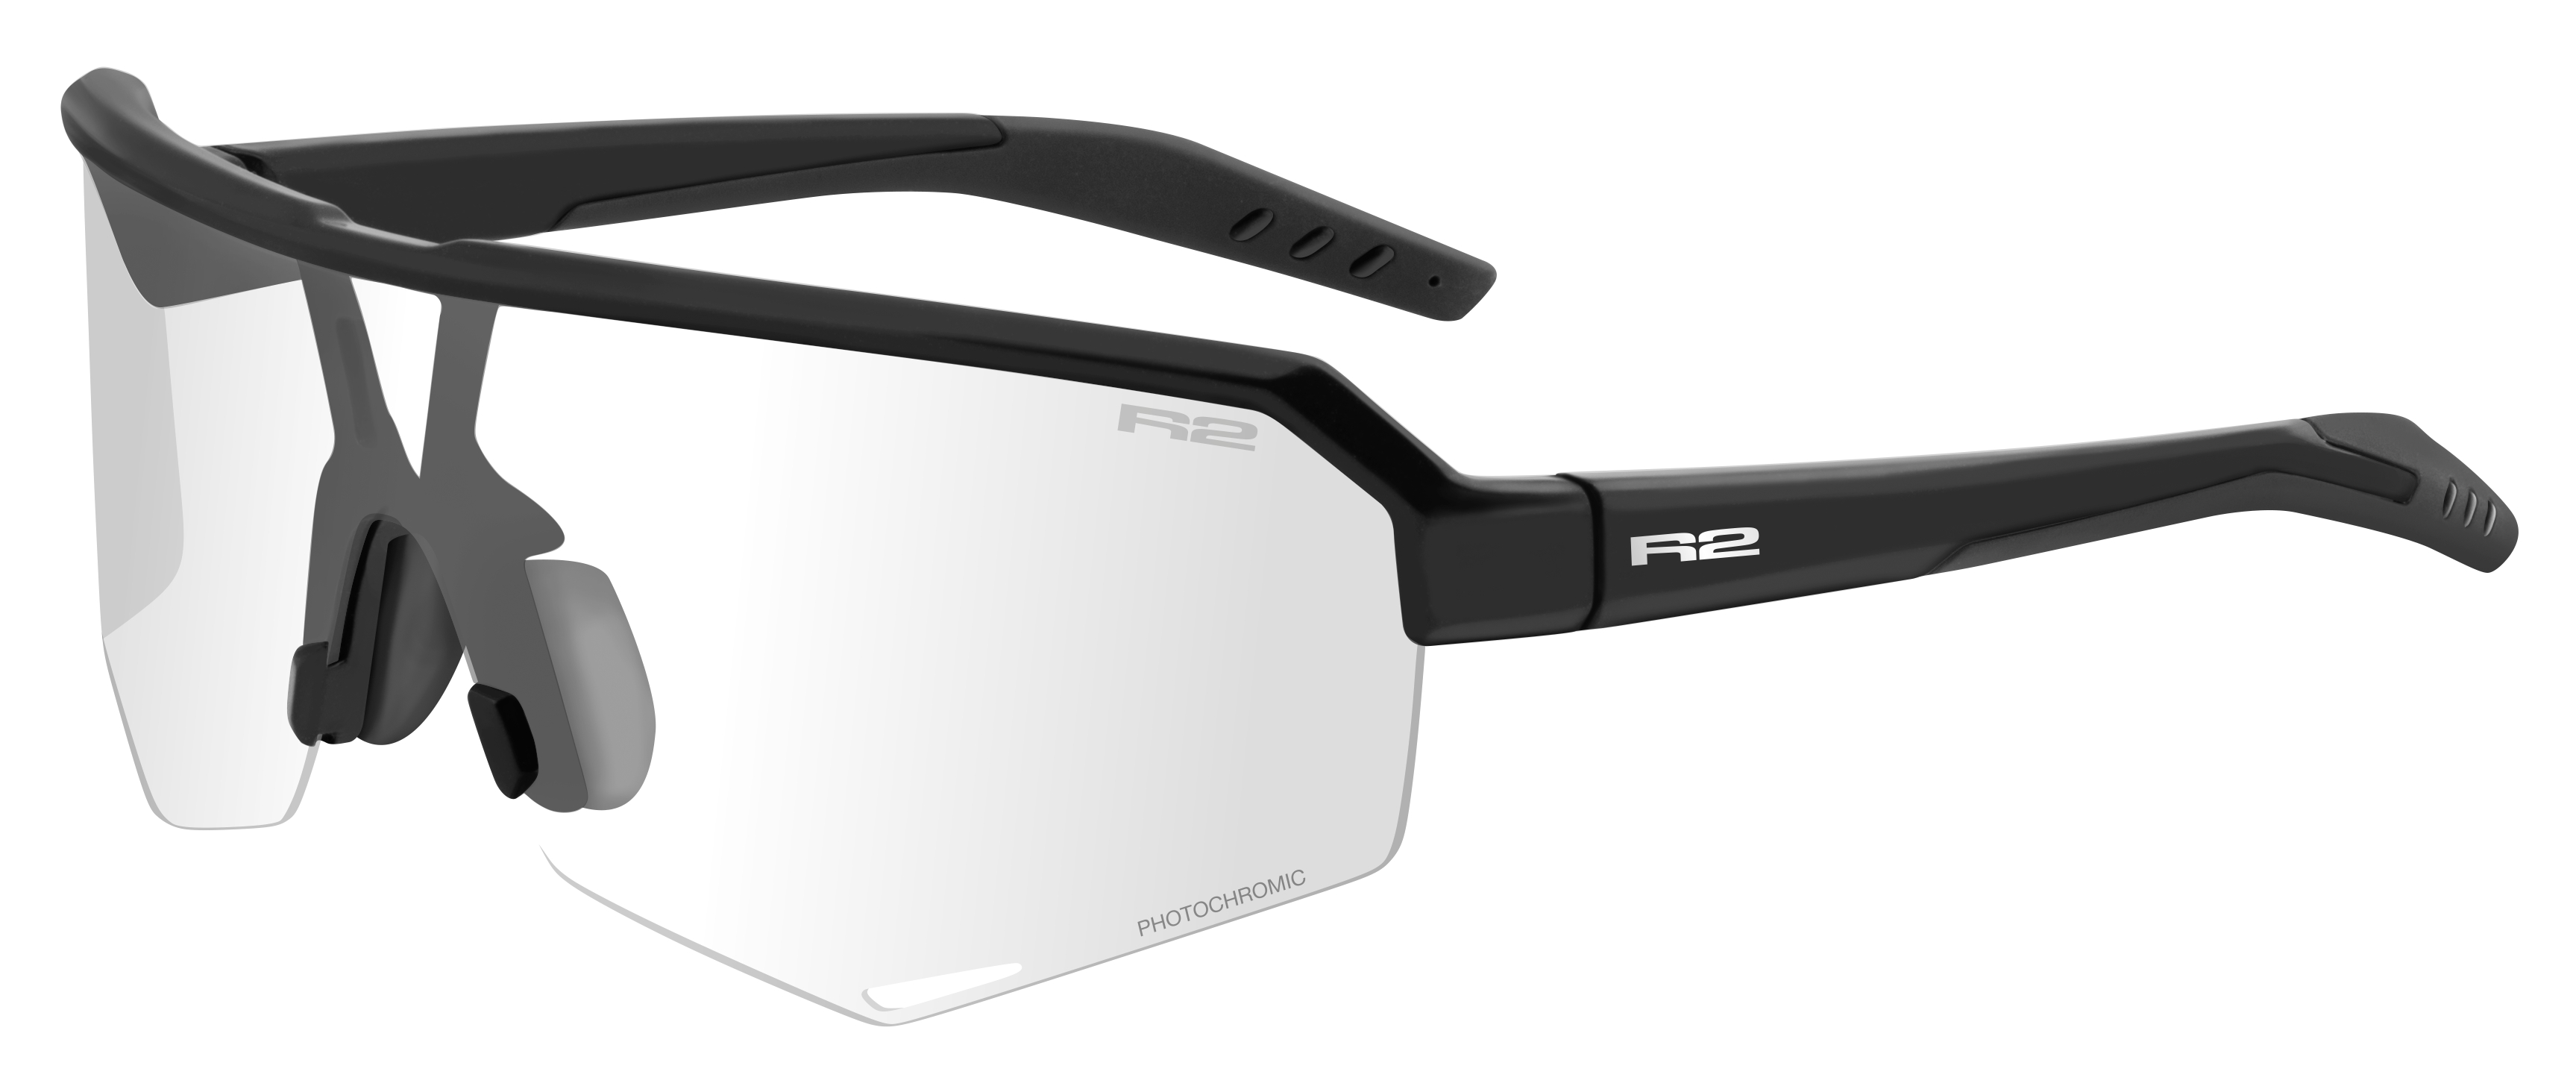 Fotochromatické sluneční brýle  R2 FLUKE AT100N - standard